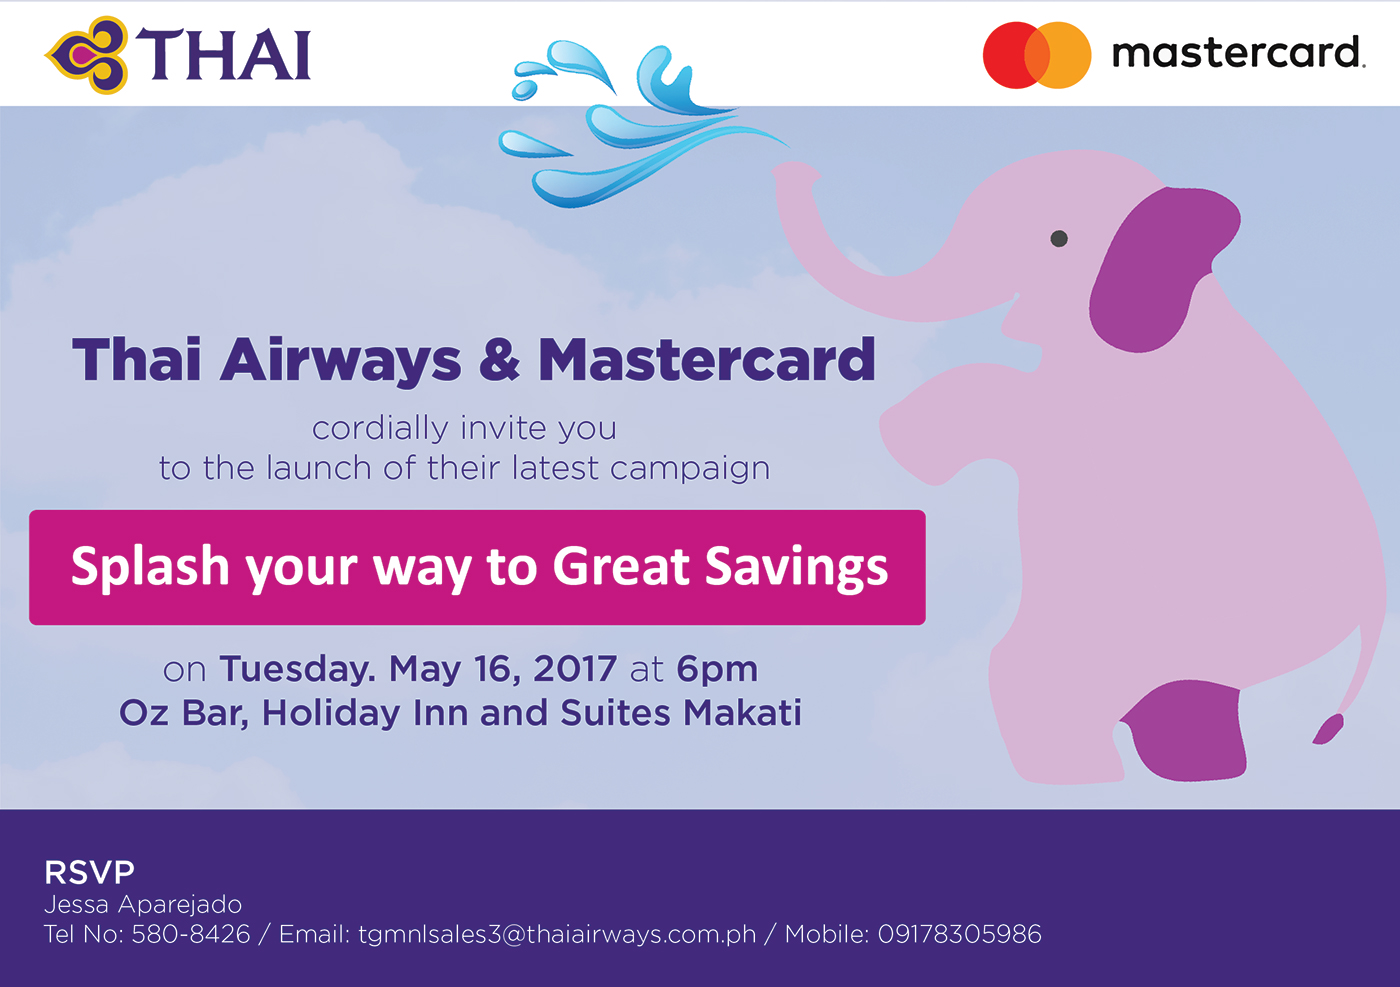 Thai Airways mastercard invite airline promo graphic design  Advertising  marketing   Thailand campaign